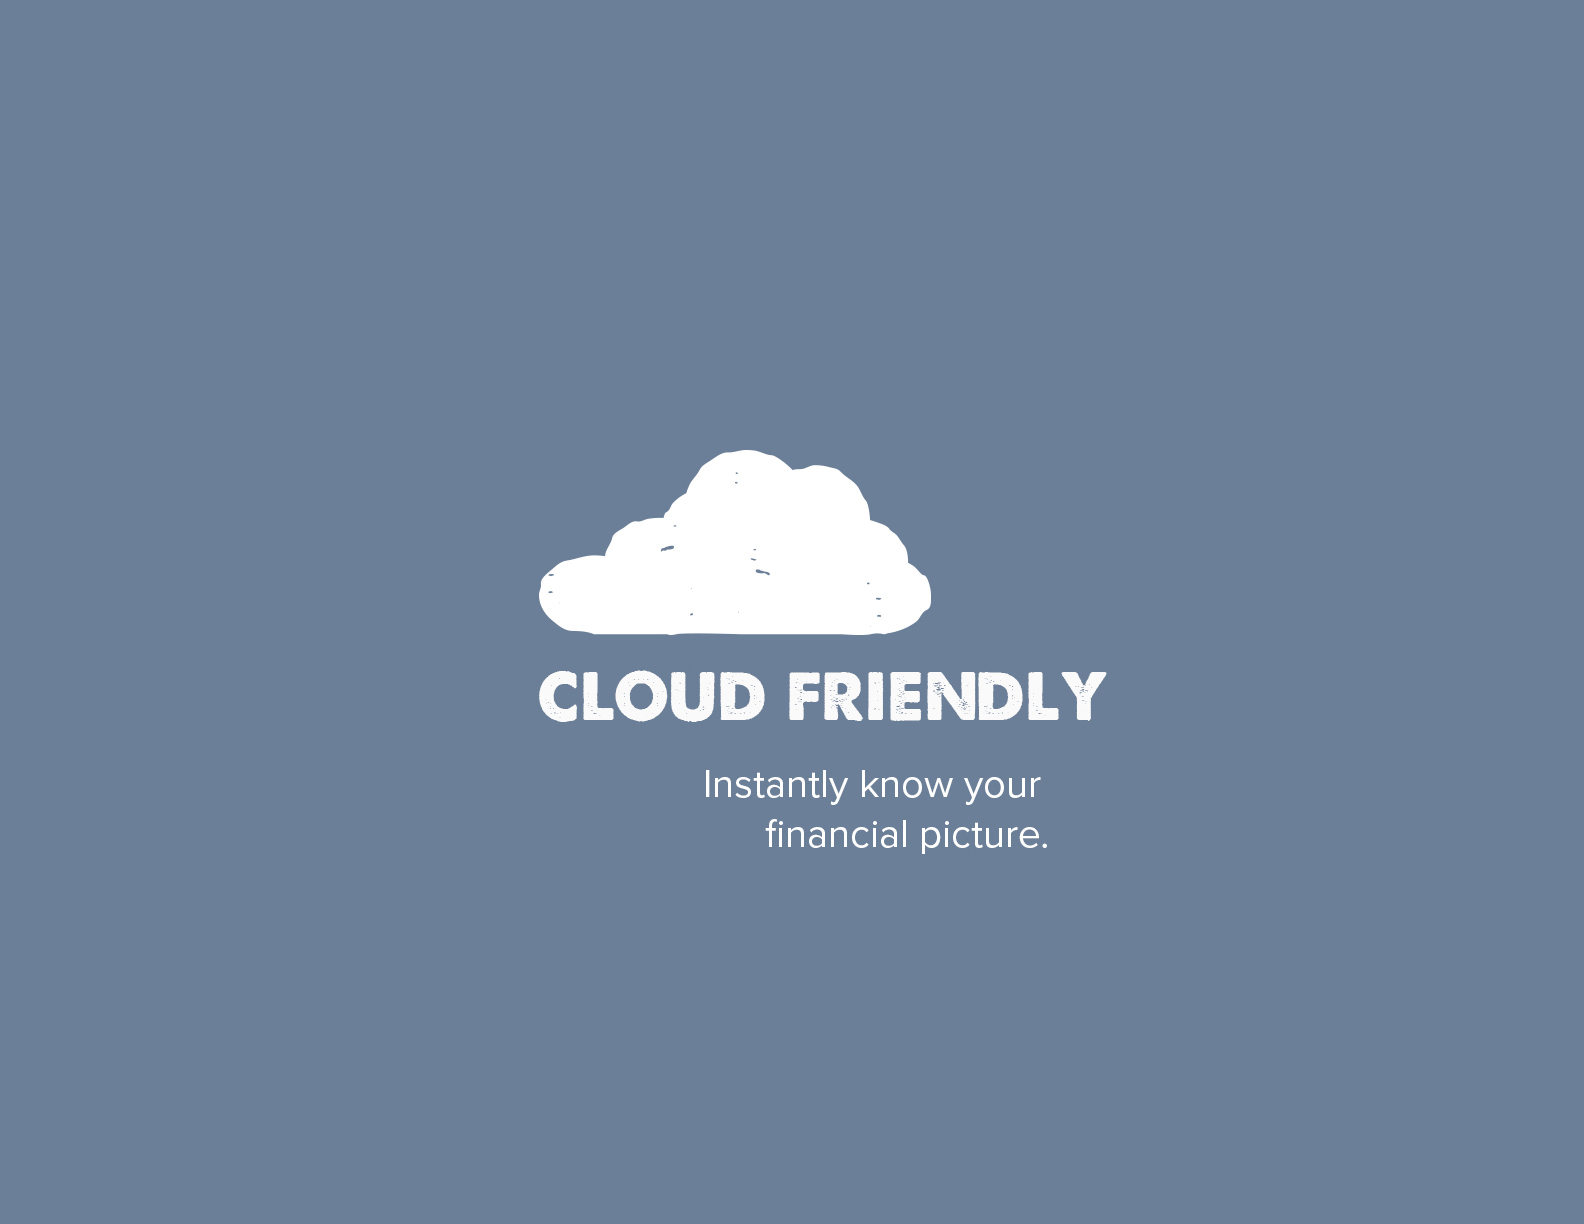 BUOY_slide2_cloud2.jpg